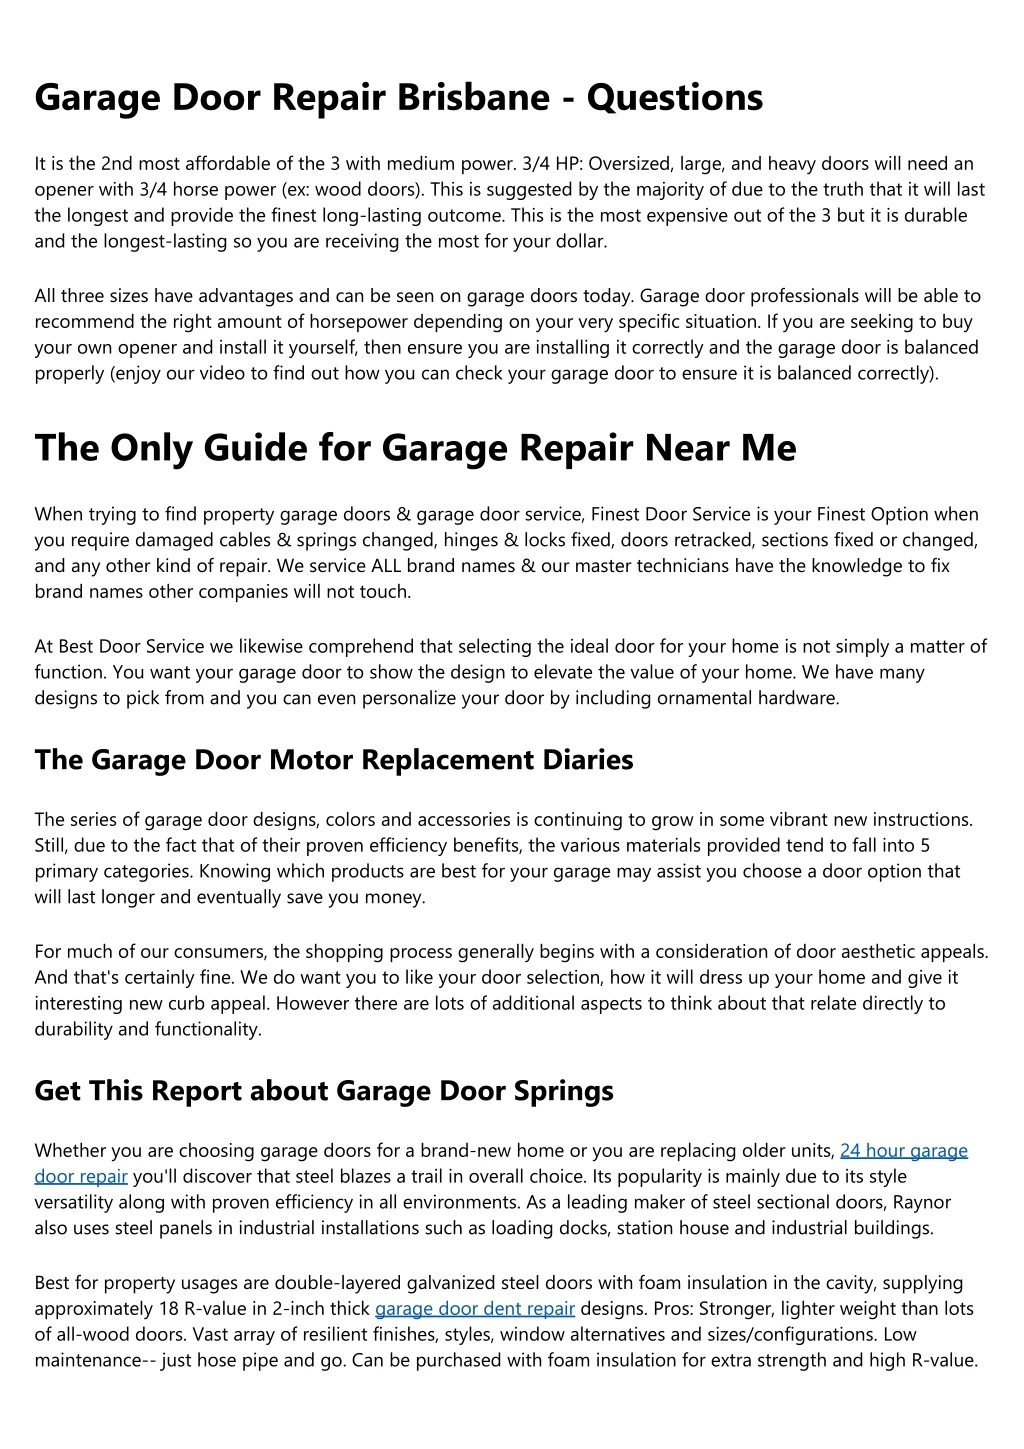 garage door repair brisbane questions